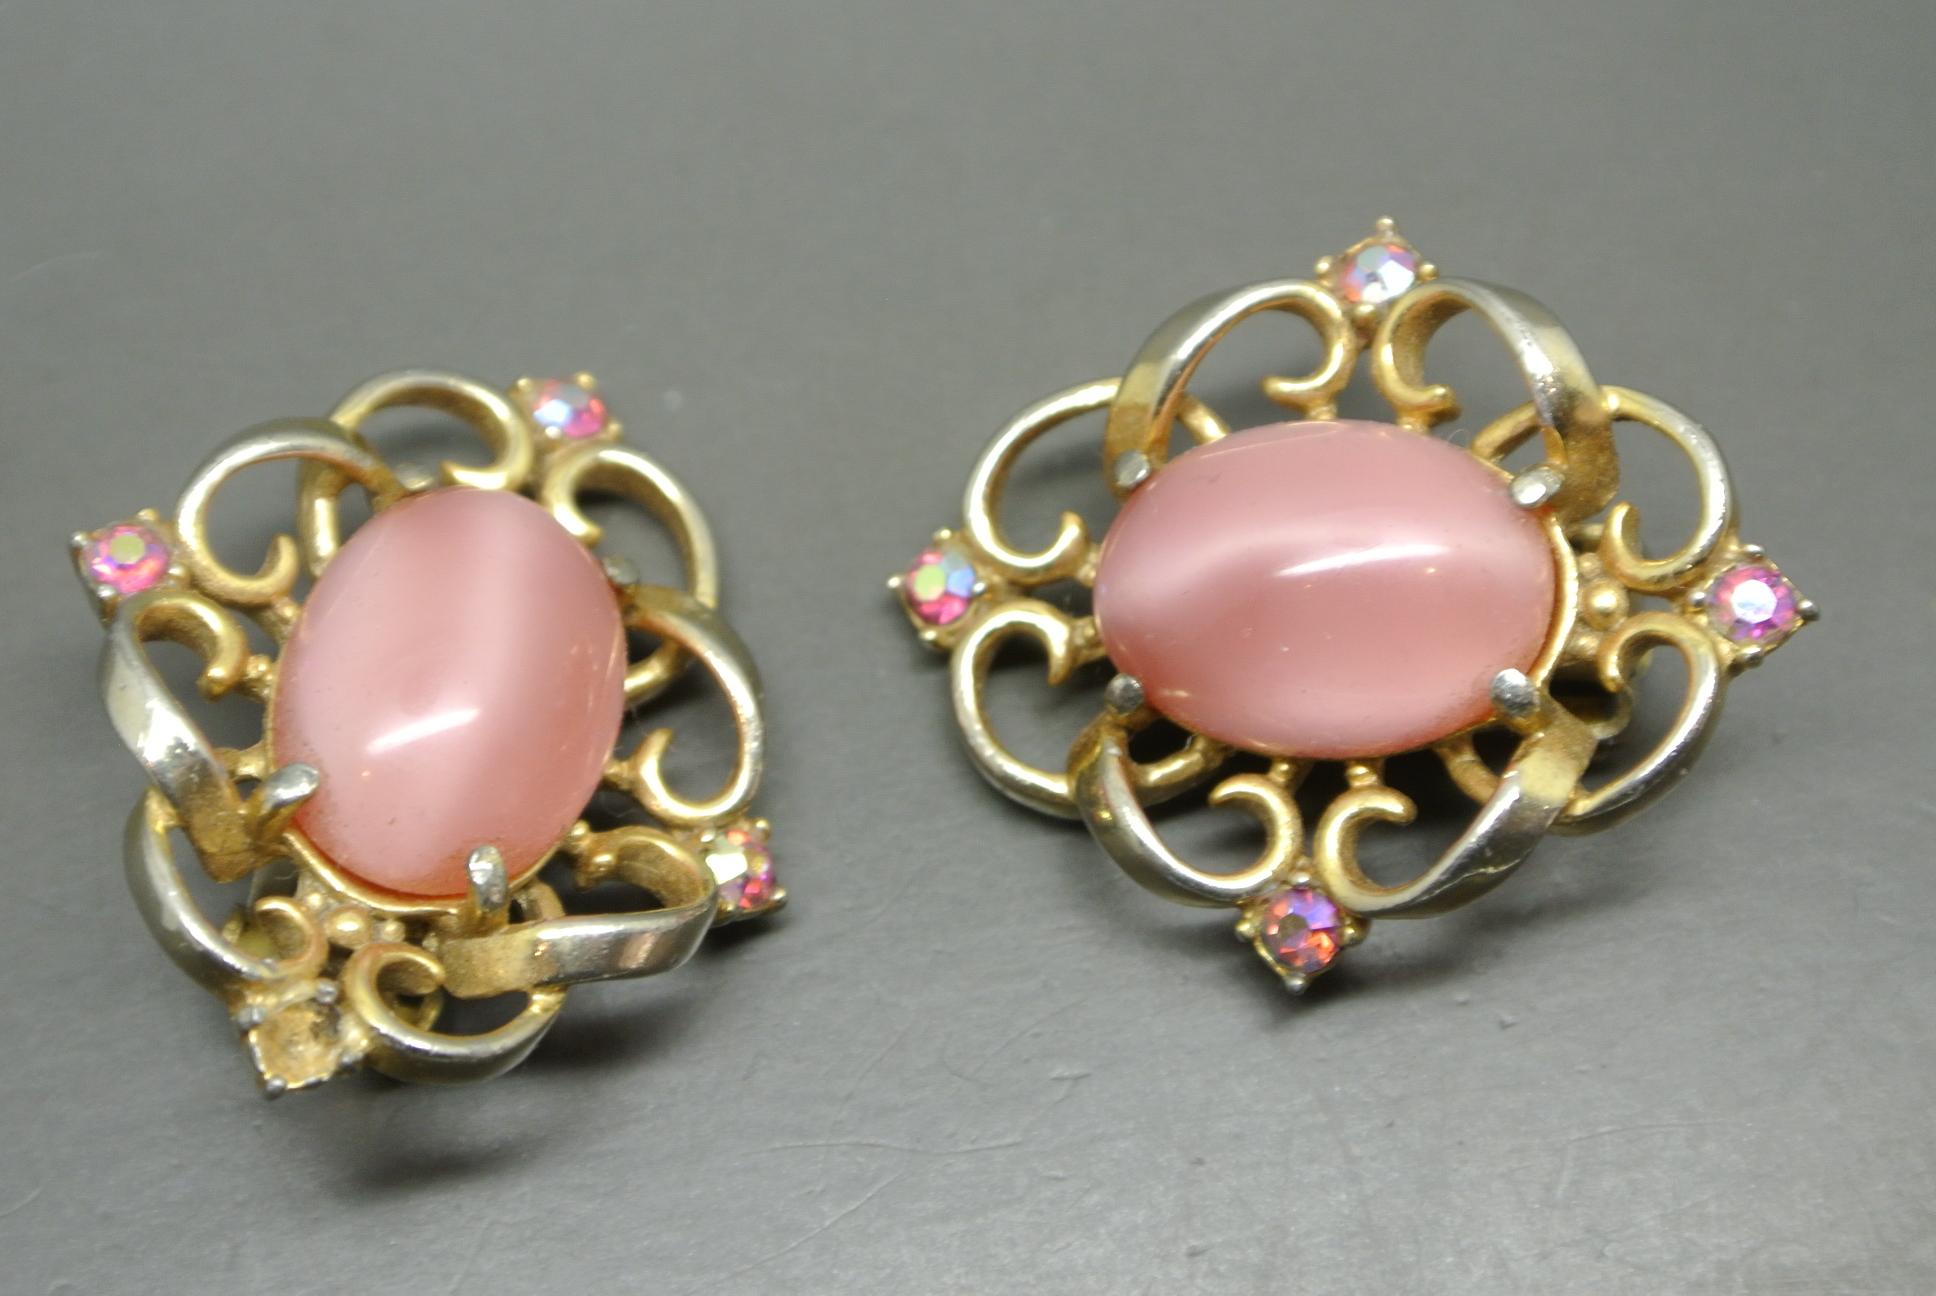 Schiaparelli earrings
Dated 1950s